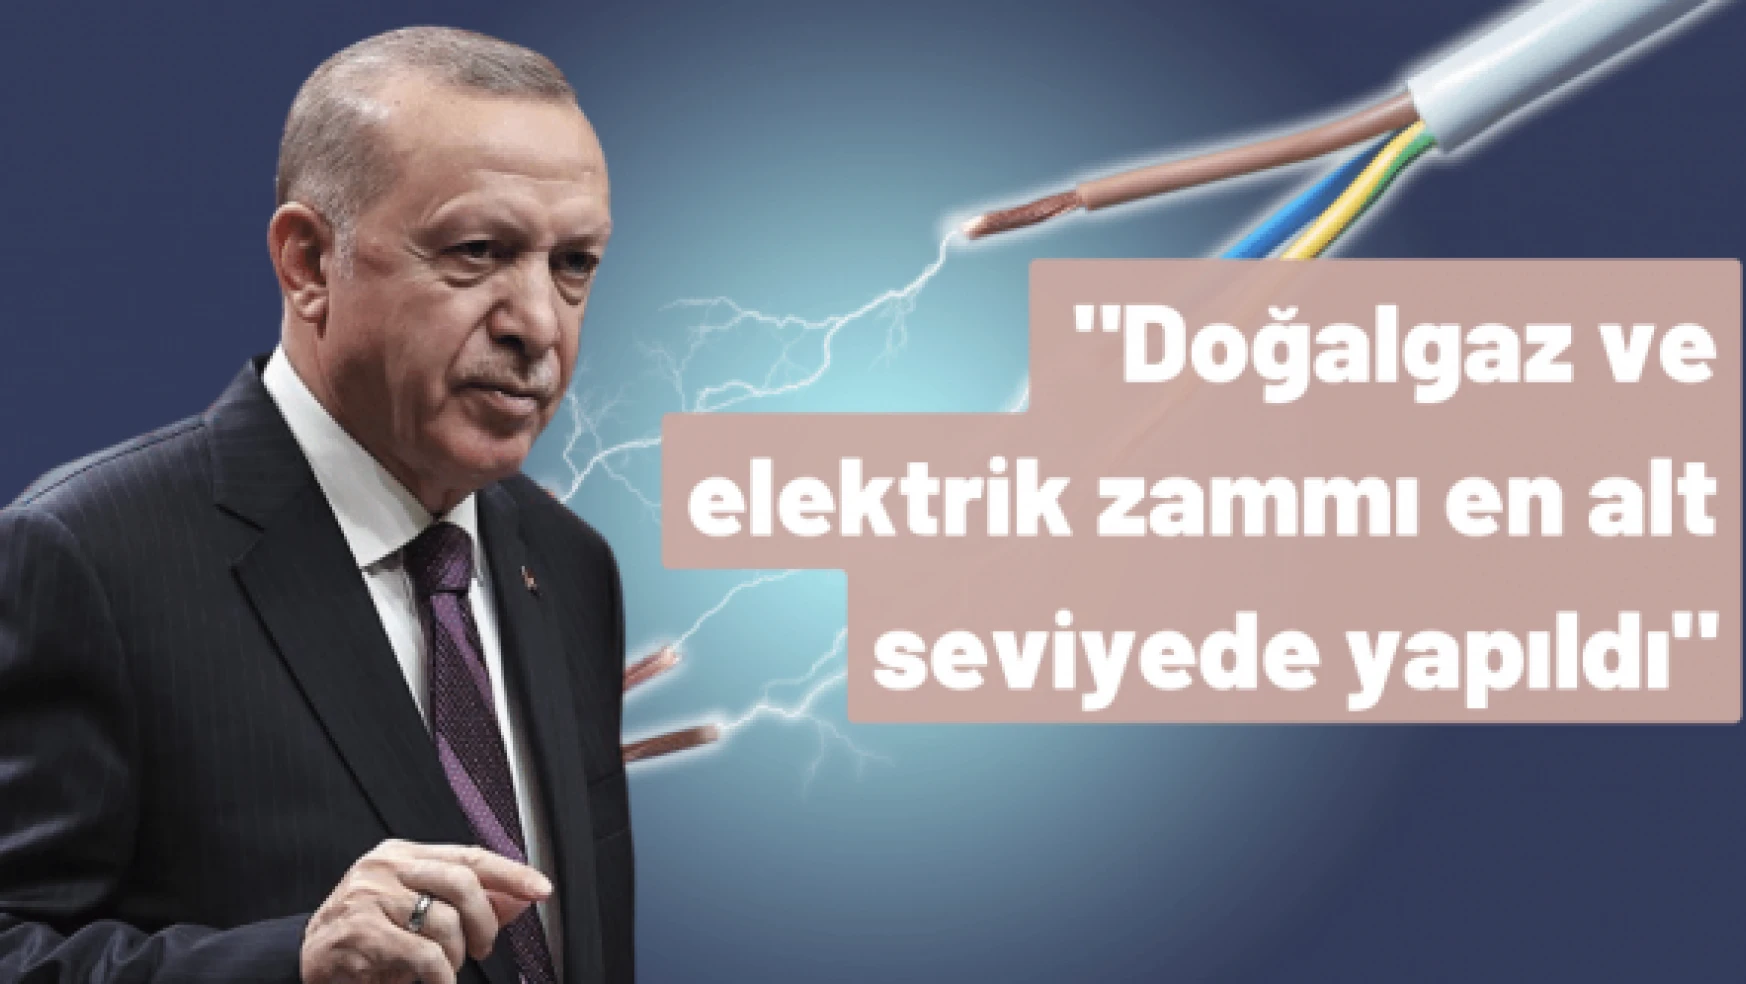 Erdoğan: &quotDoğalgaz ve elektrik zammı en alt seviyede yapıldı"